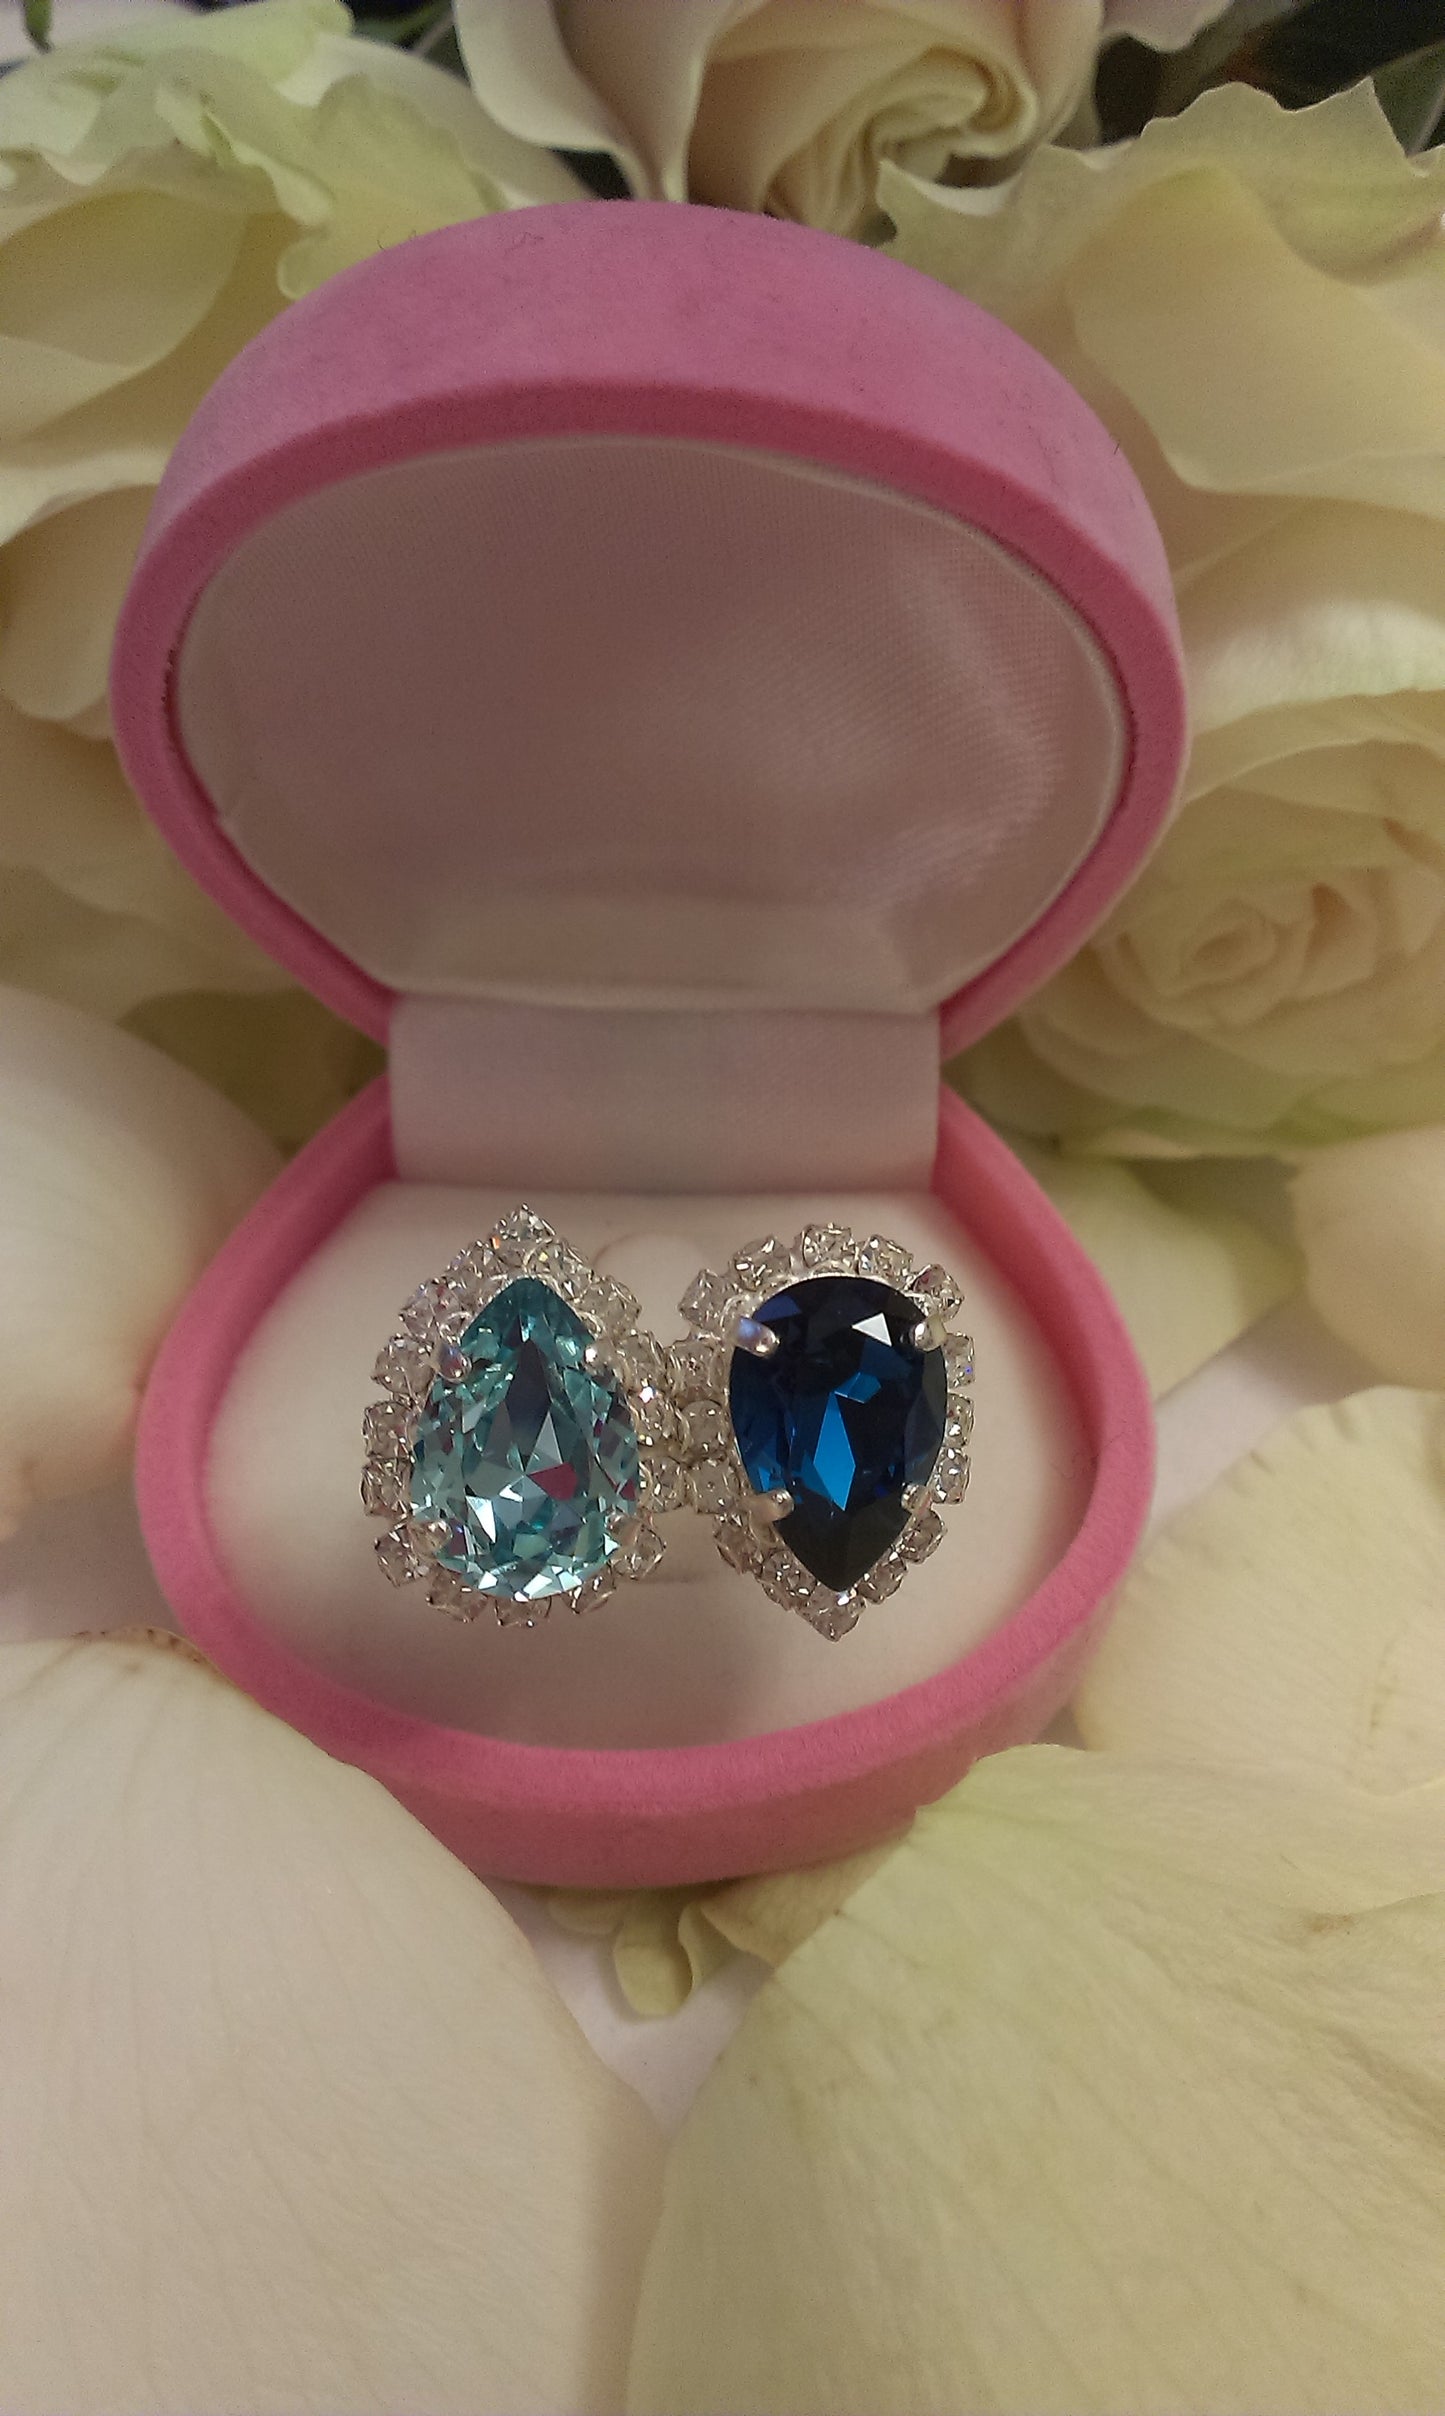 Δαχτυλίδι ανοιγόμενο σε μπλε και γαλάζια απόχρωση